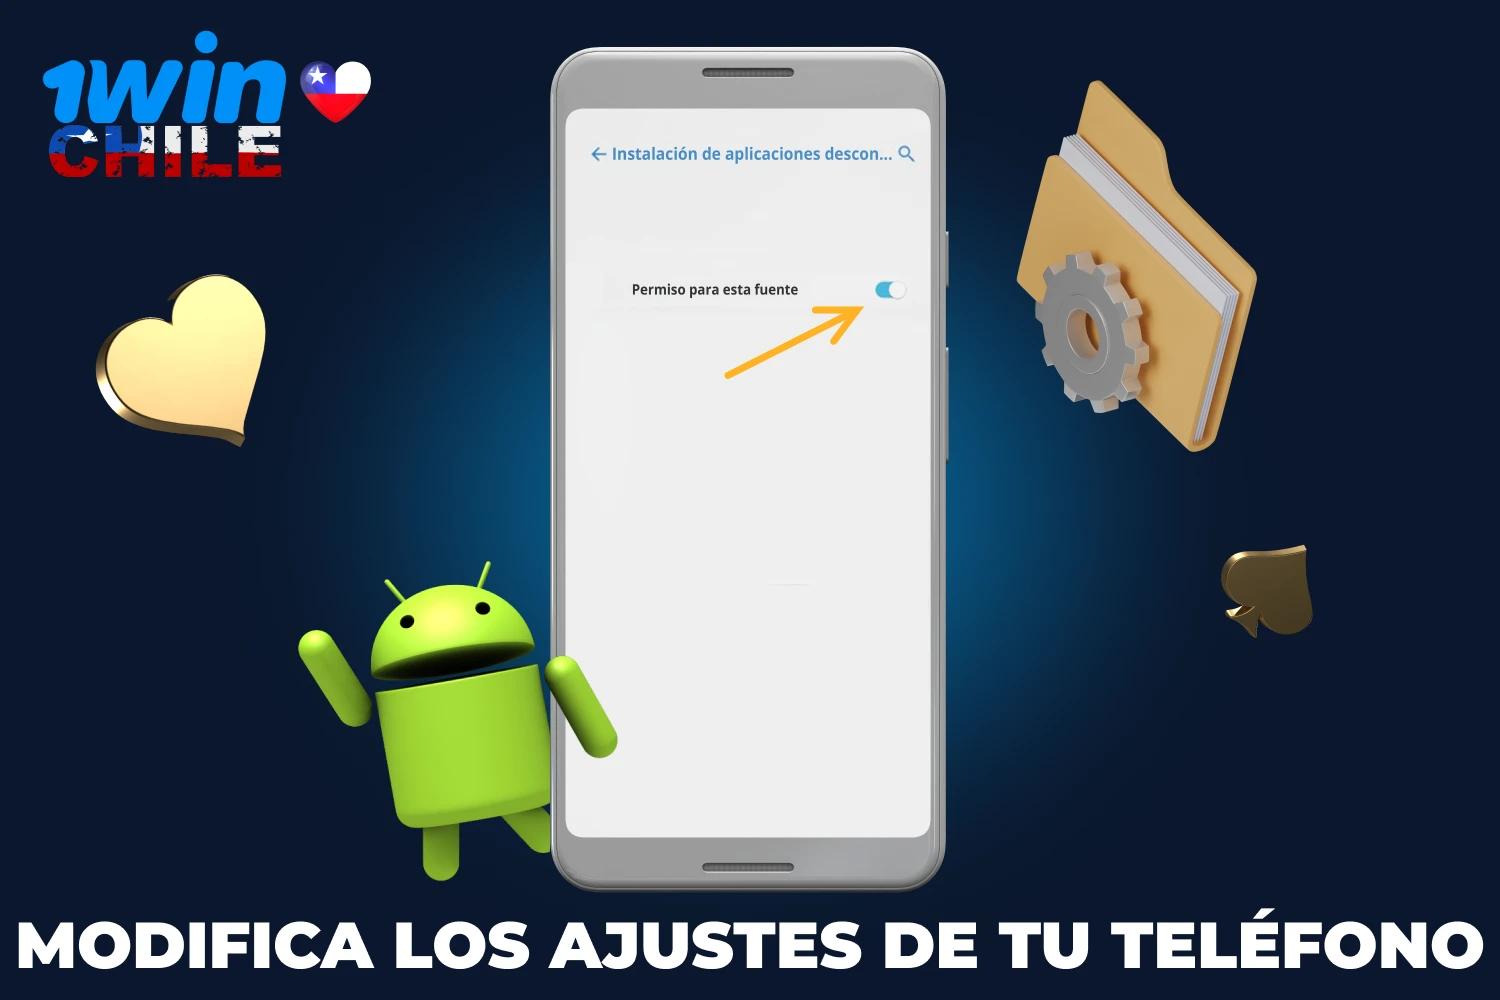 Antes de instalar la aplicación 1win en un dispositivo Android, los jugadores chilenos deben realizar cambios en la configuración de sus teléfonos